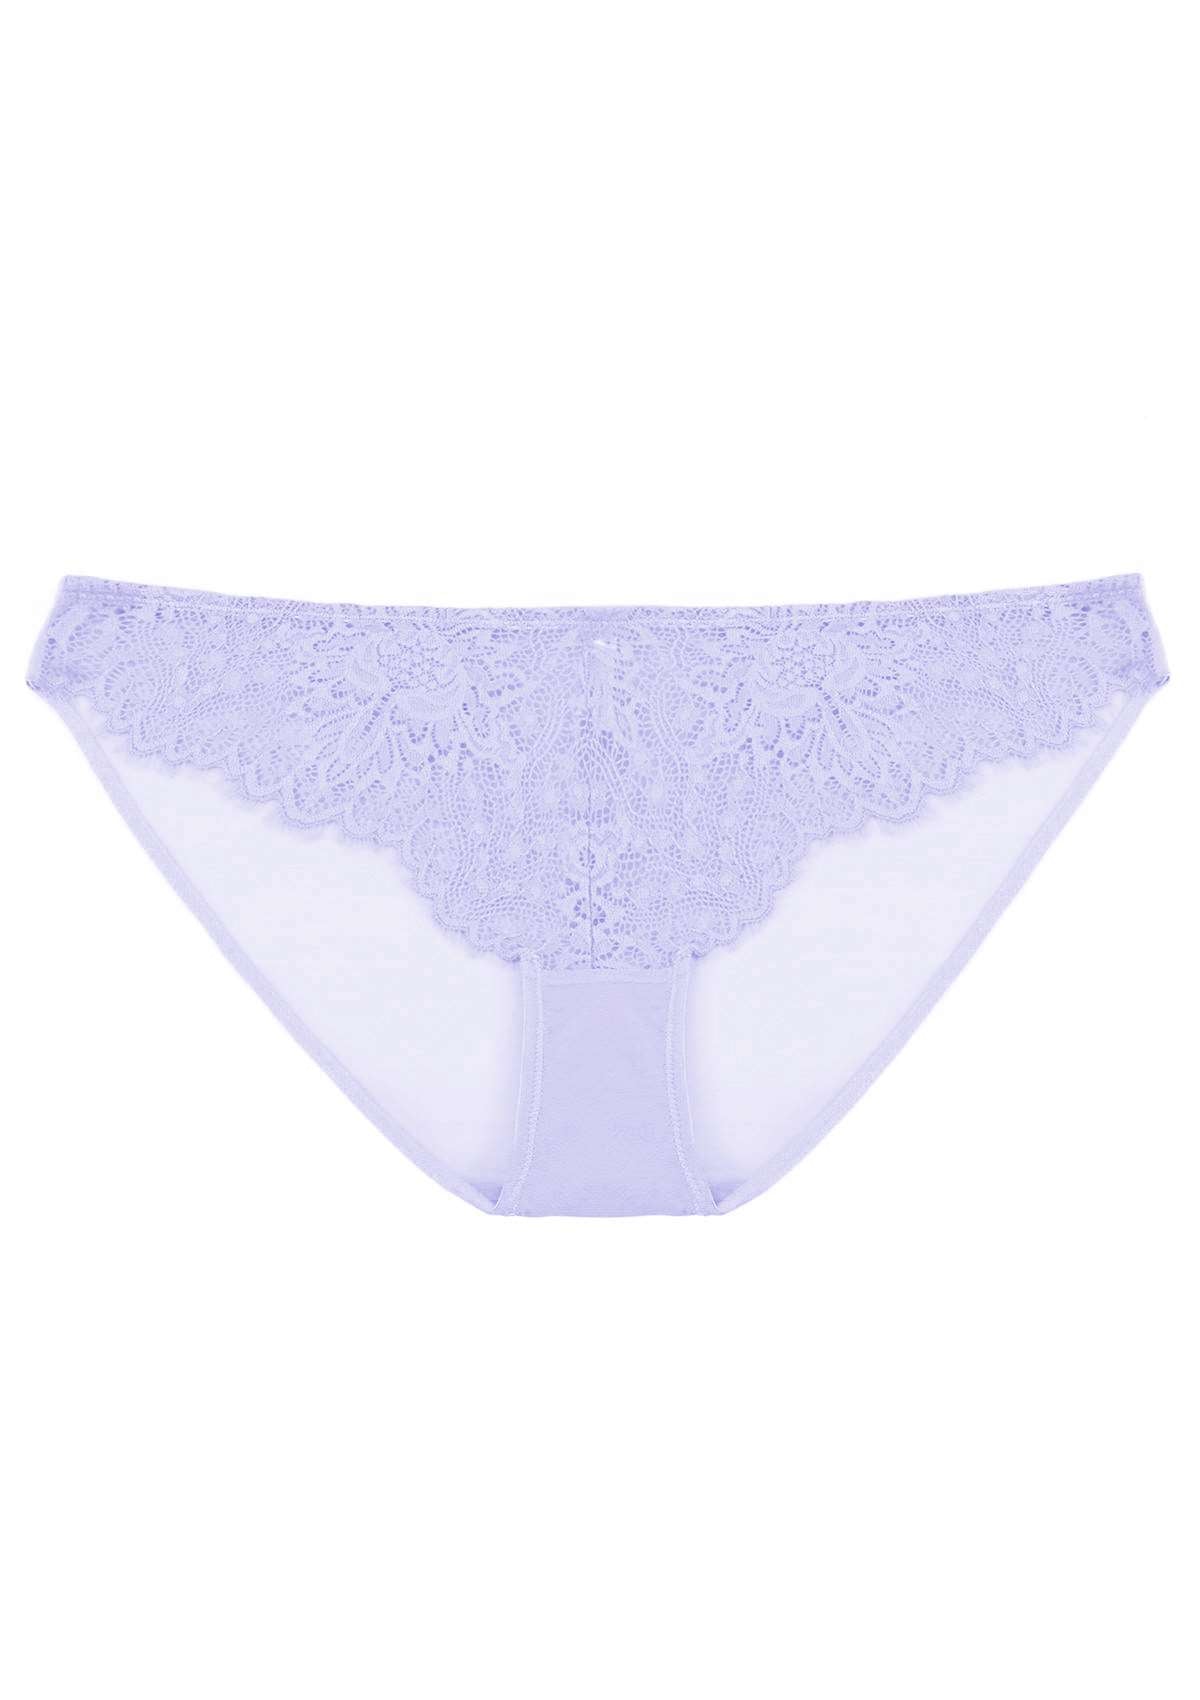 HSIA Sunflower Exquisite Lace Bikini Underwear - XXXL / Purple